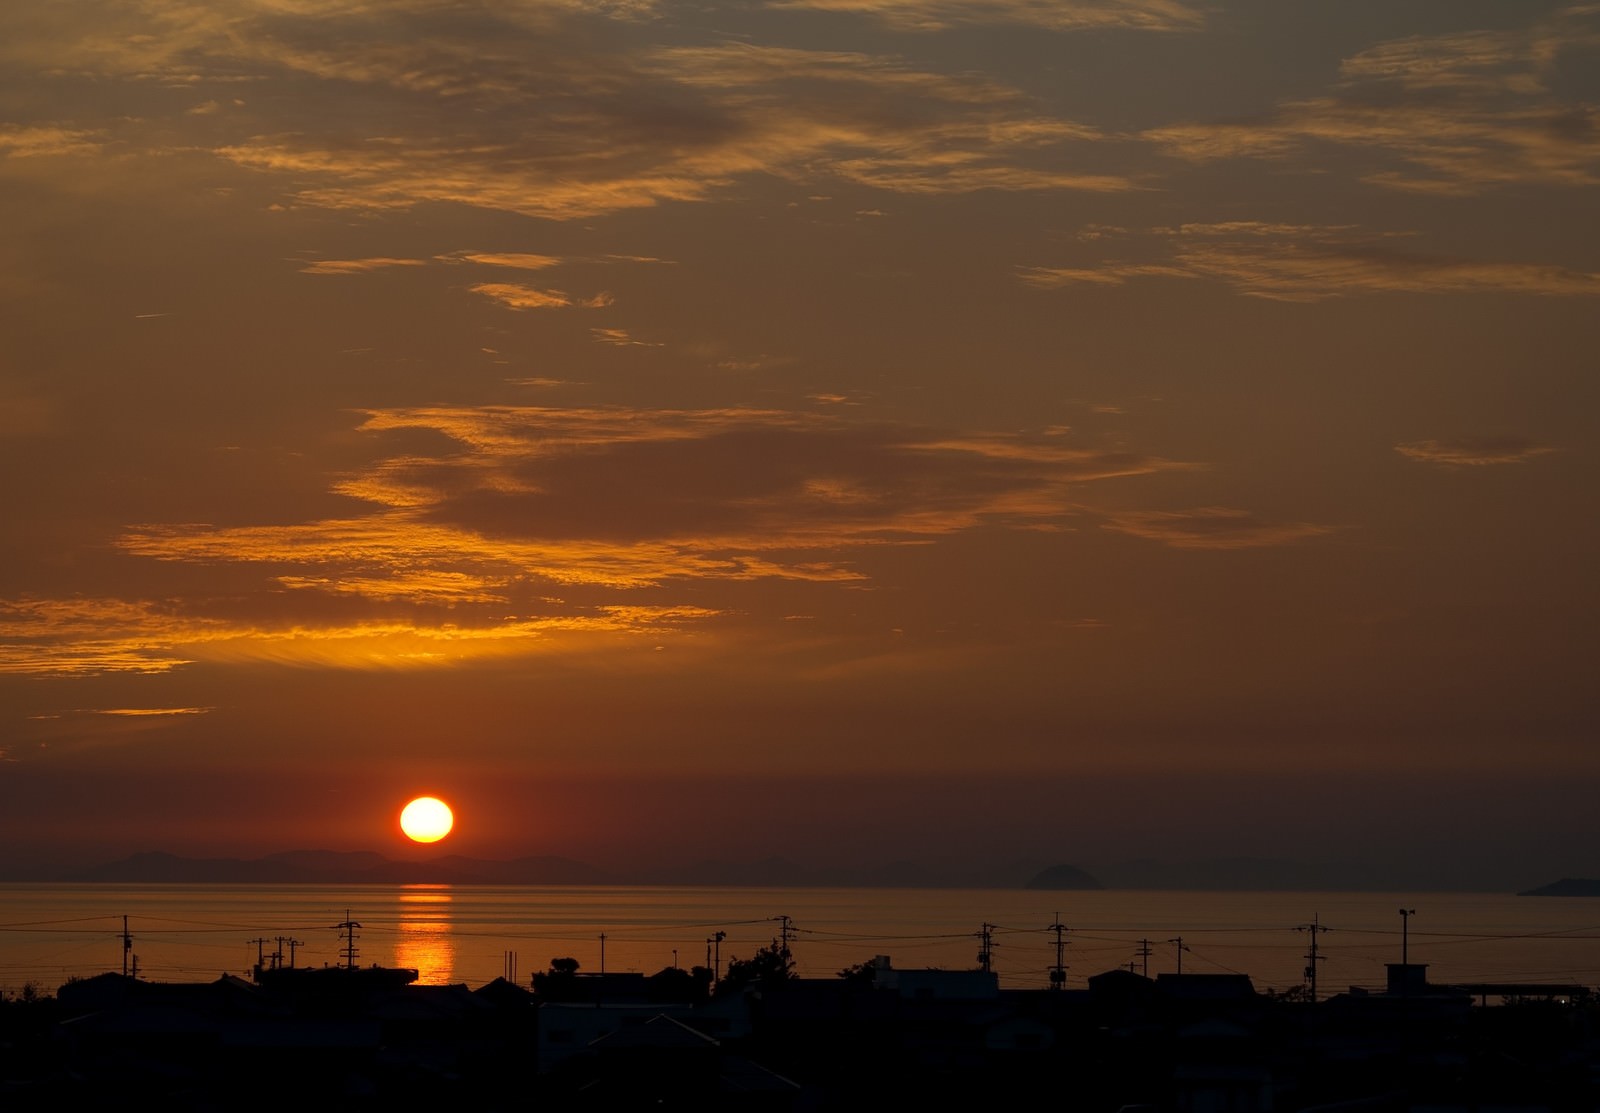 「燧灘に沈む夕陽」の写真